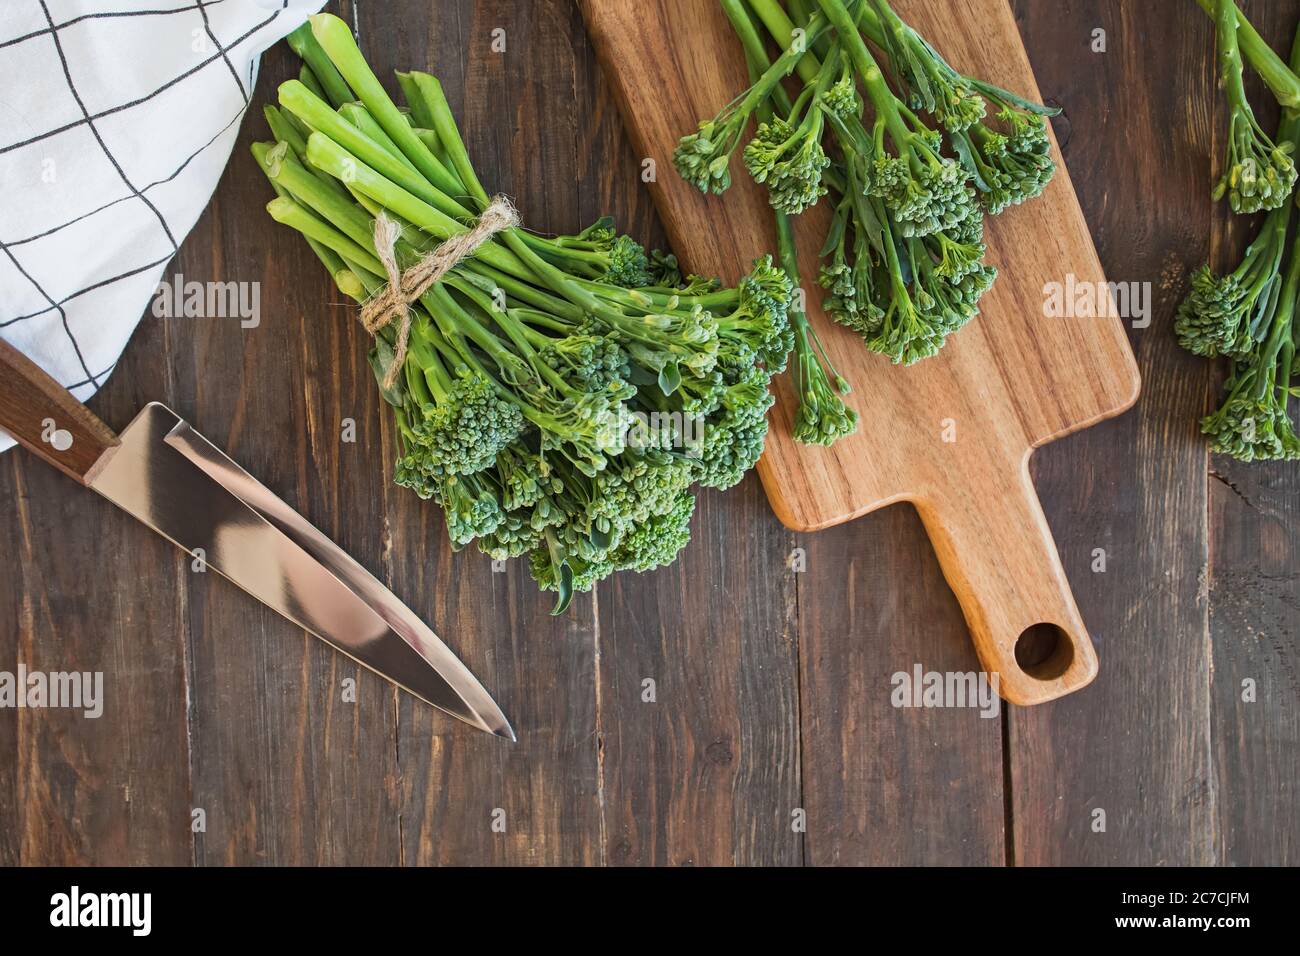 Verdure crude di broccolini verdi su tavola di legno. Foto Stock